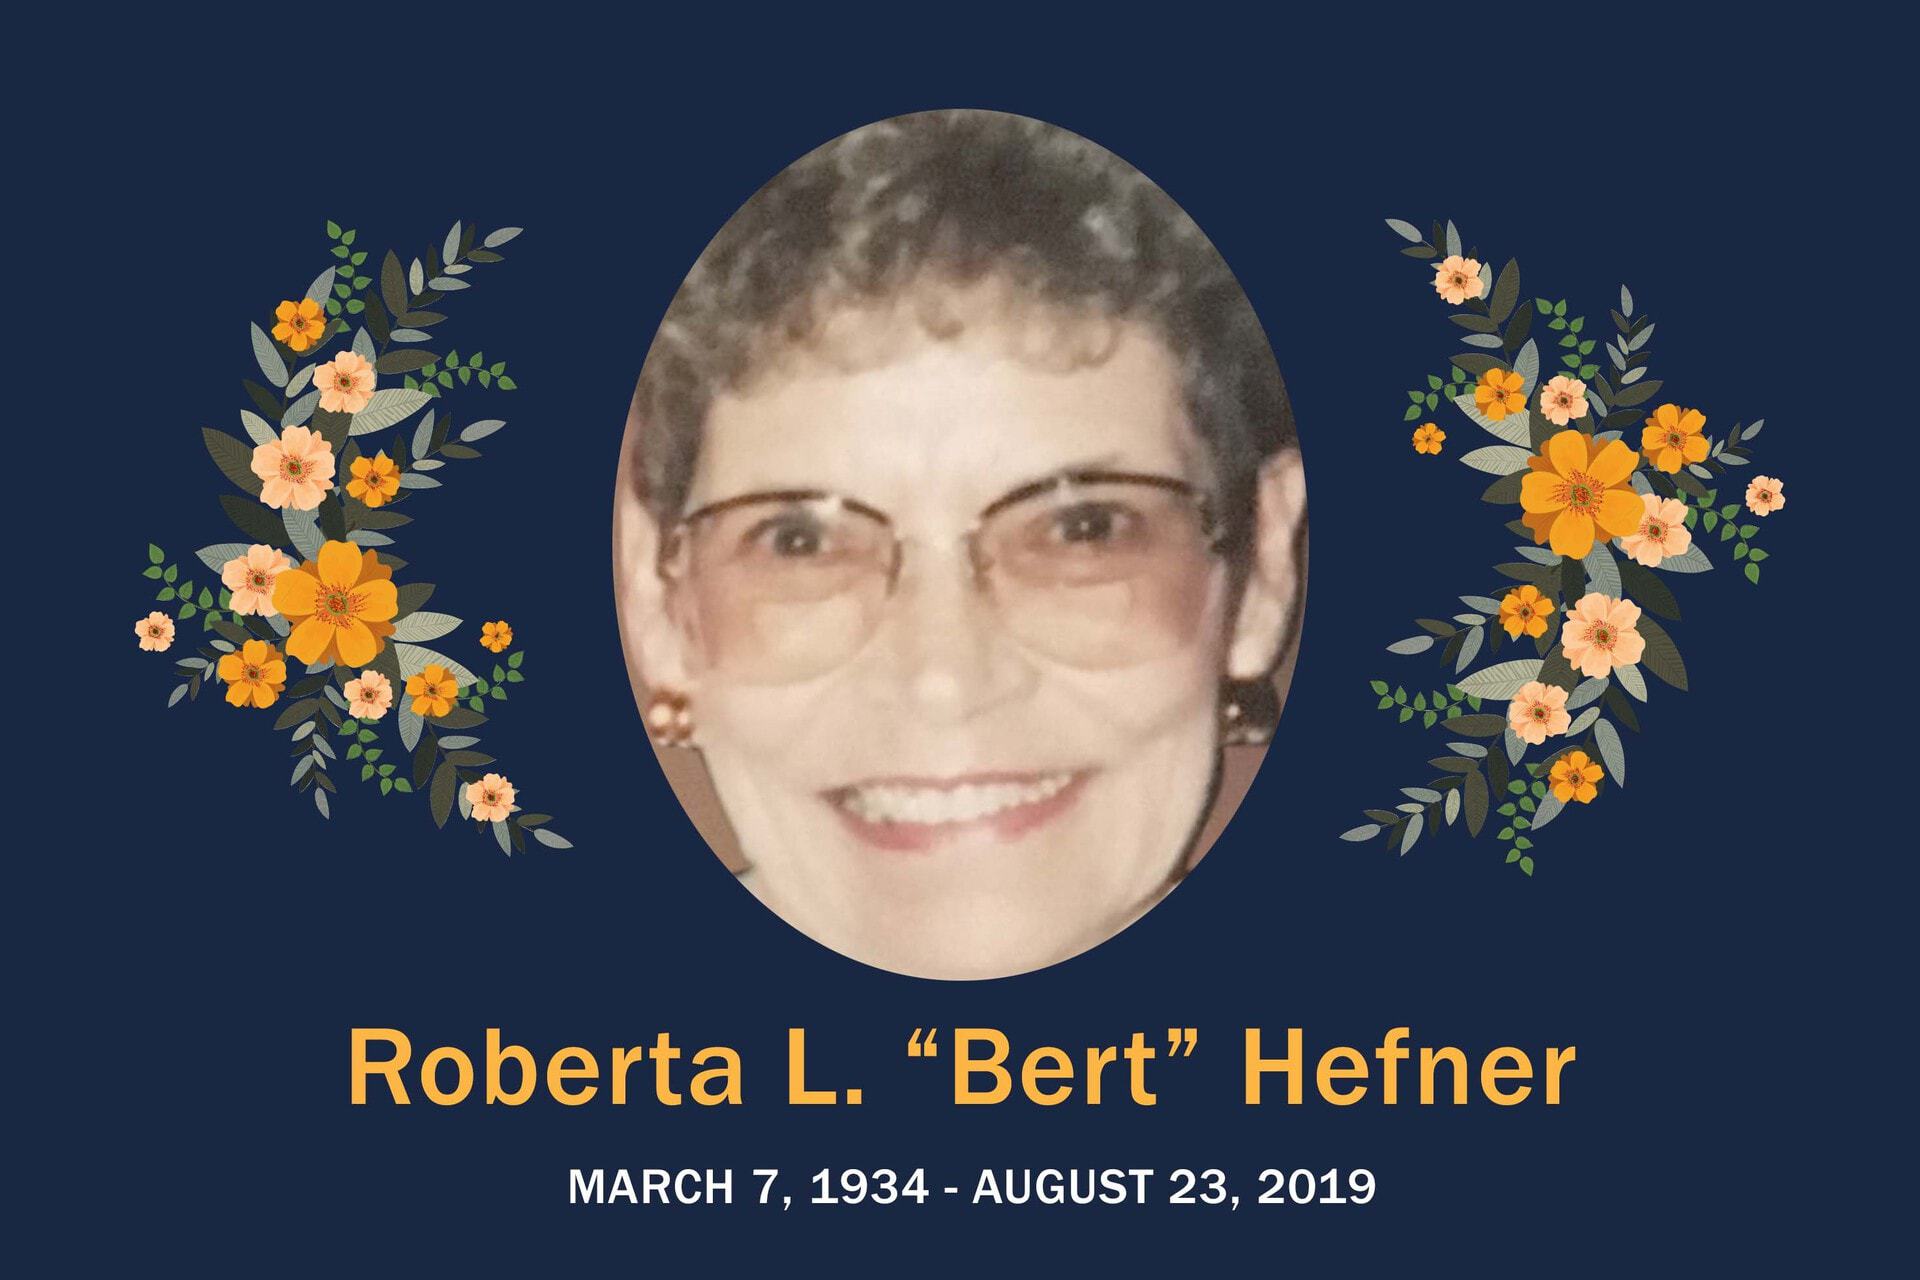 Obituary Bert Hefner